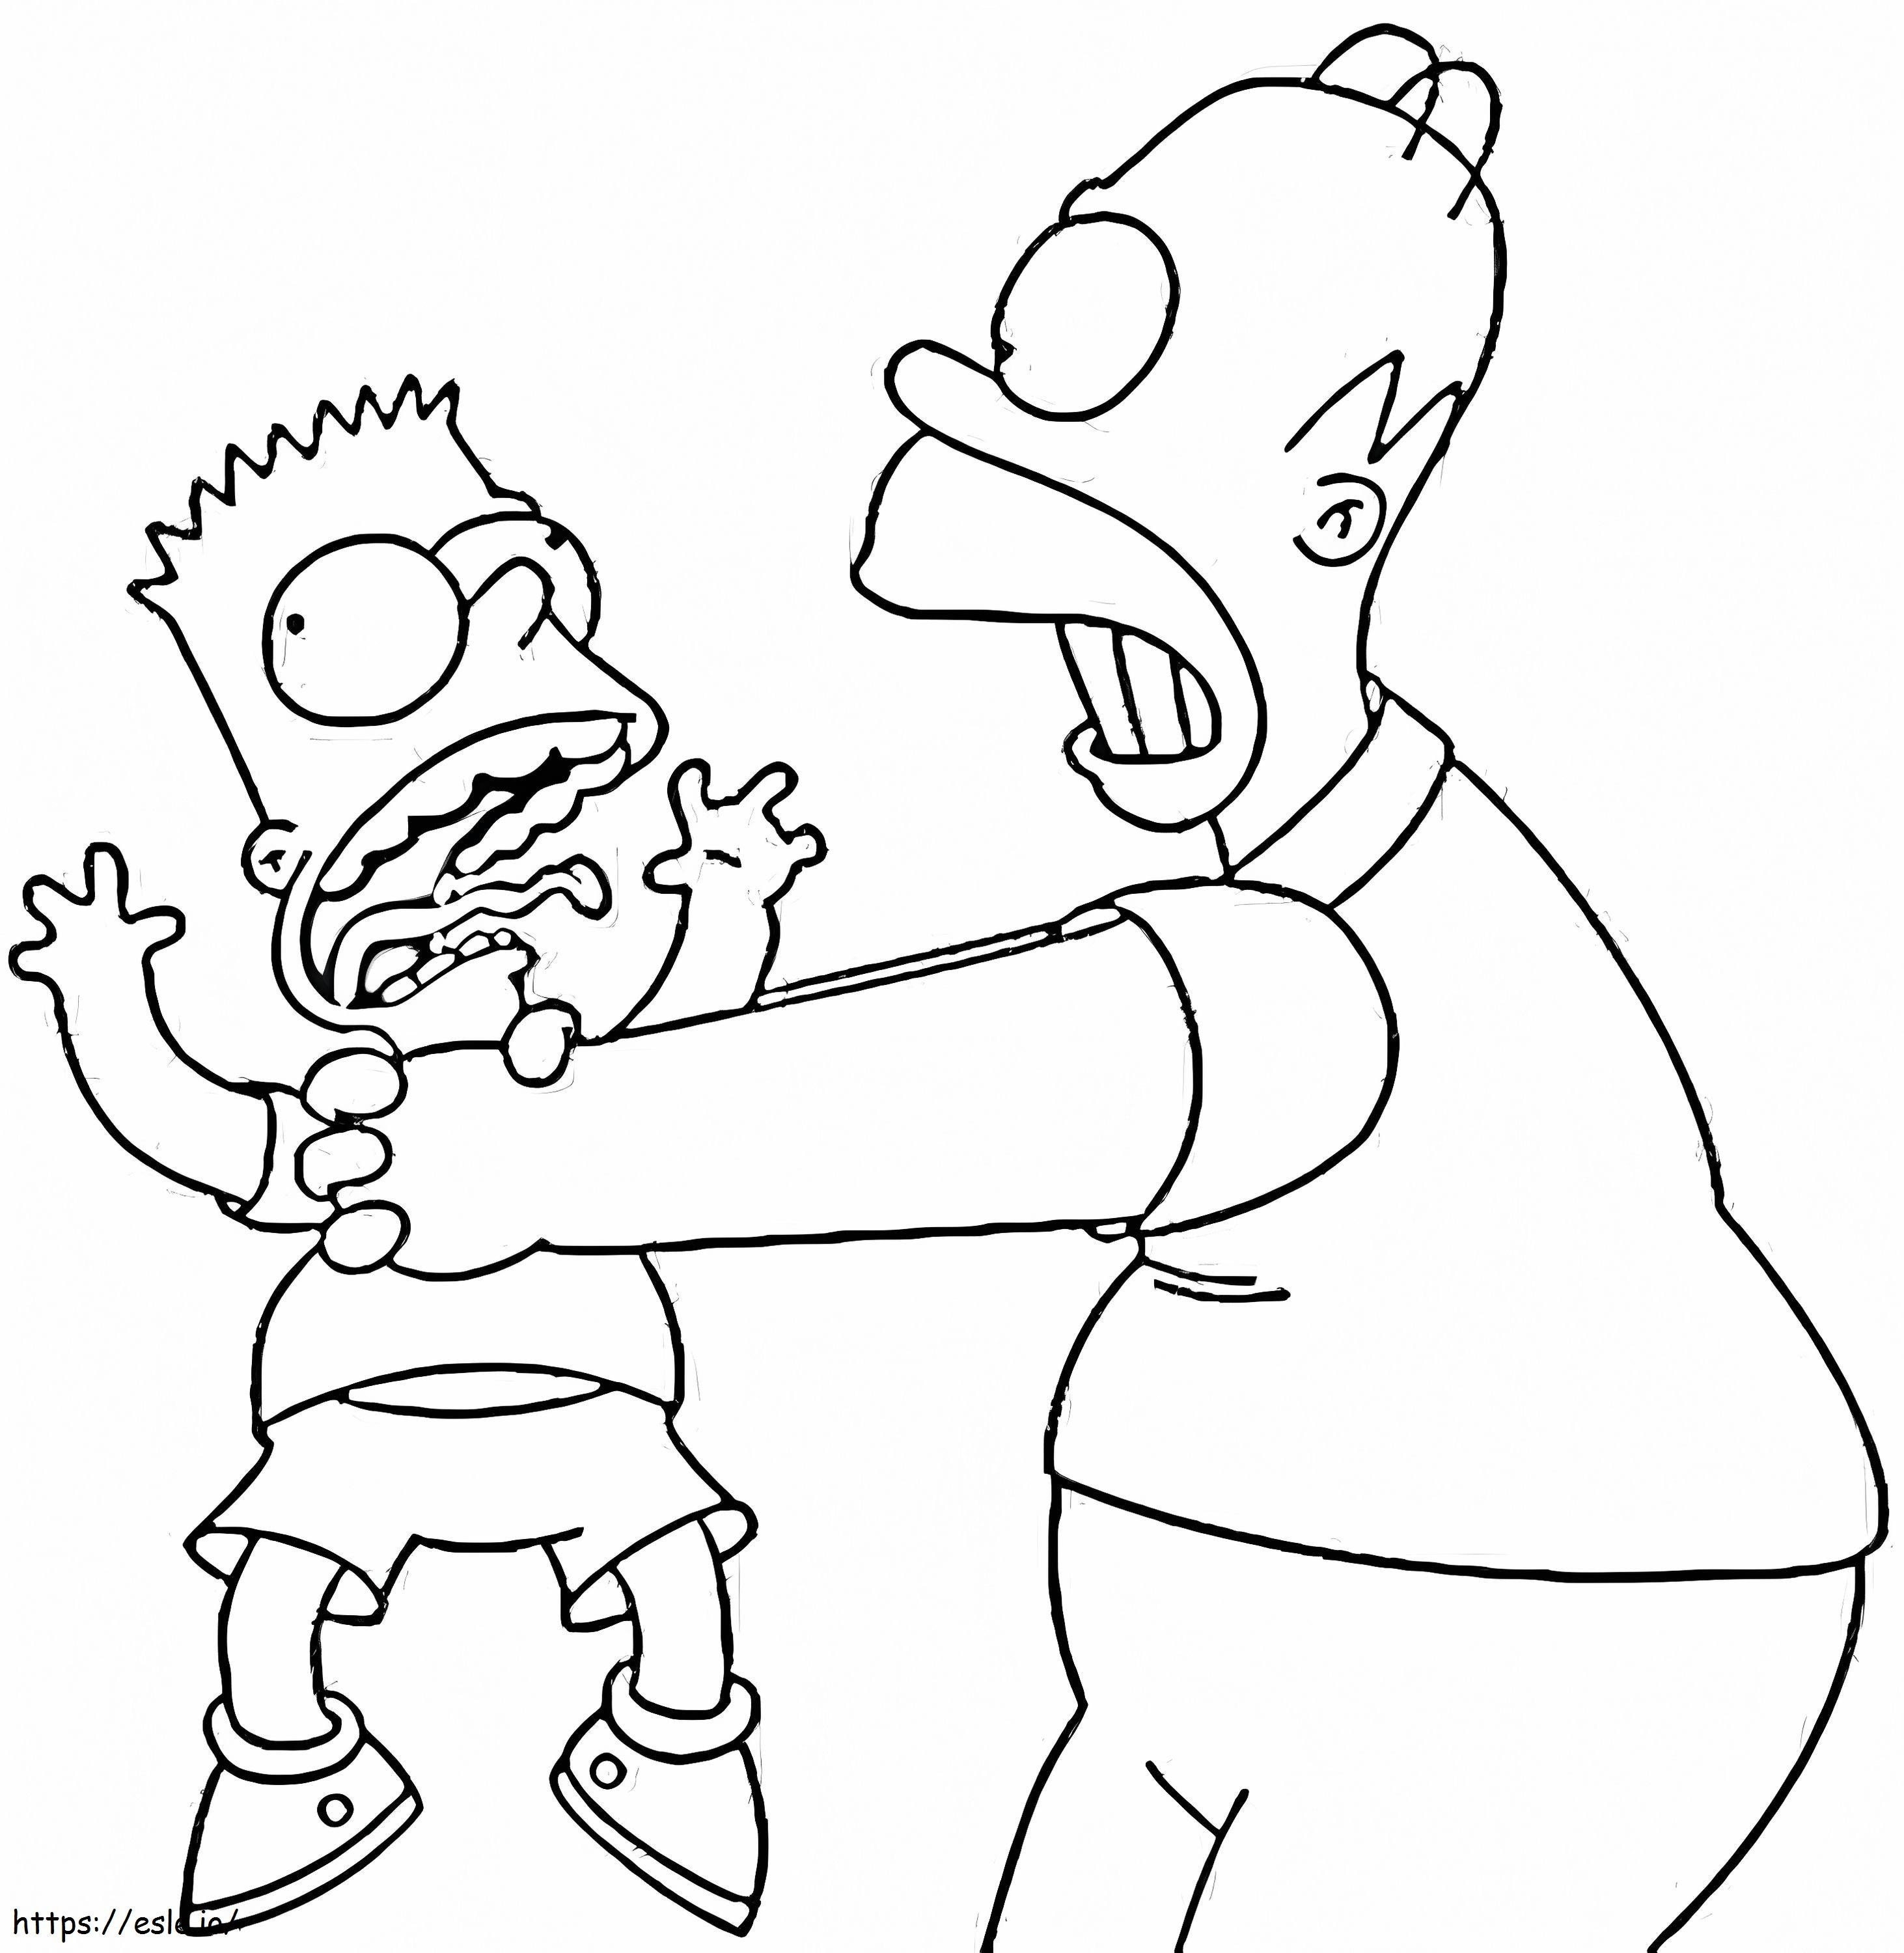 Bart dan Homer Simpson Gambar Mewarnai